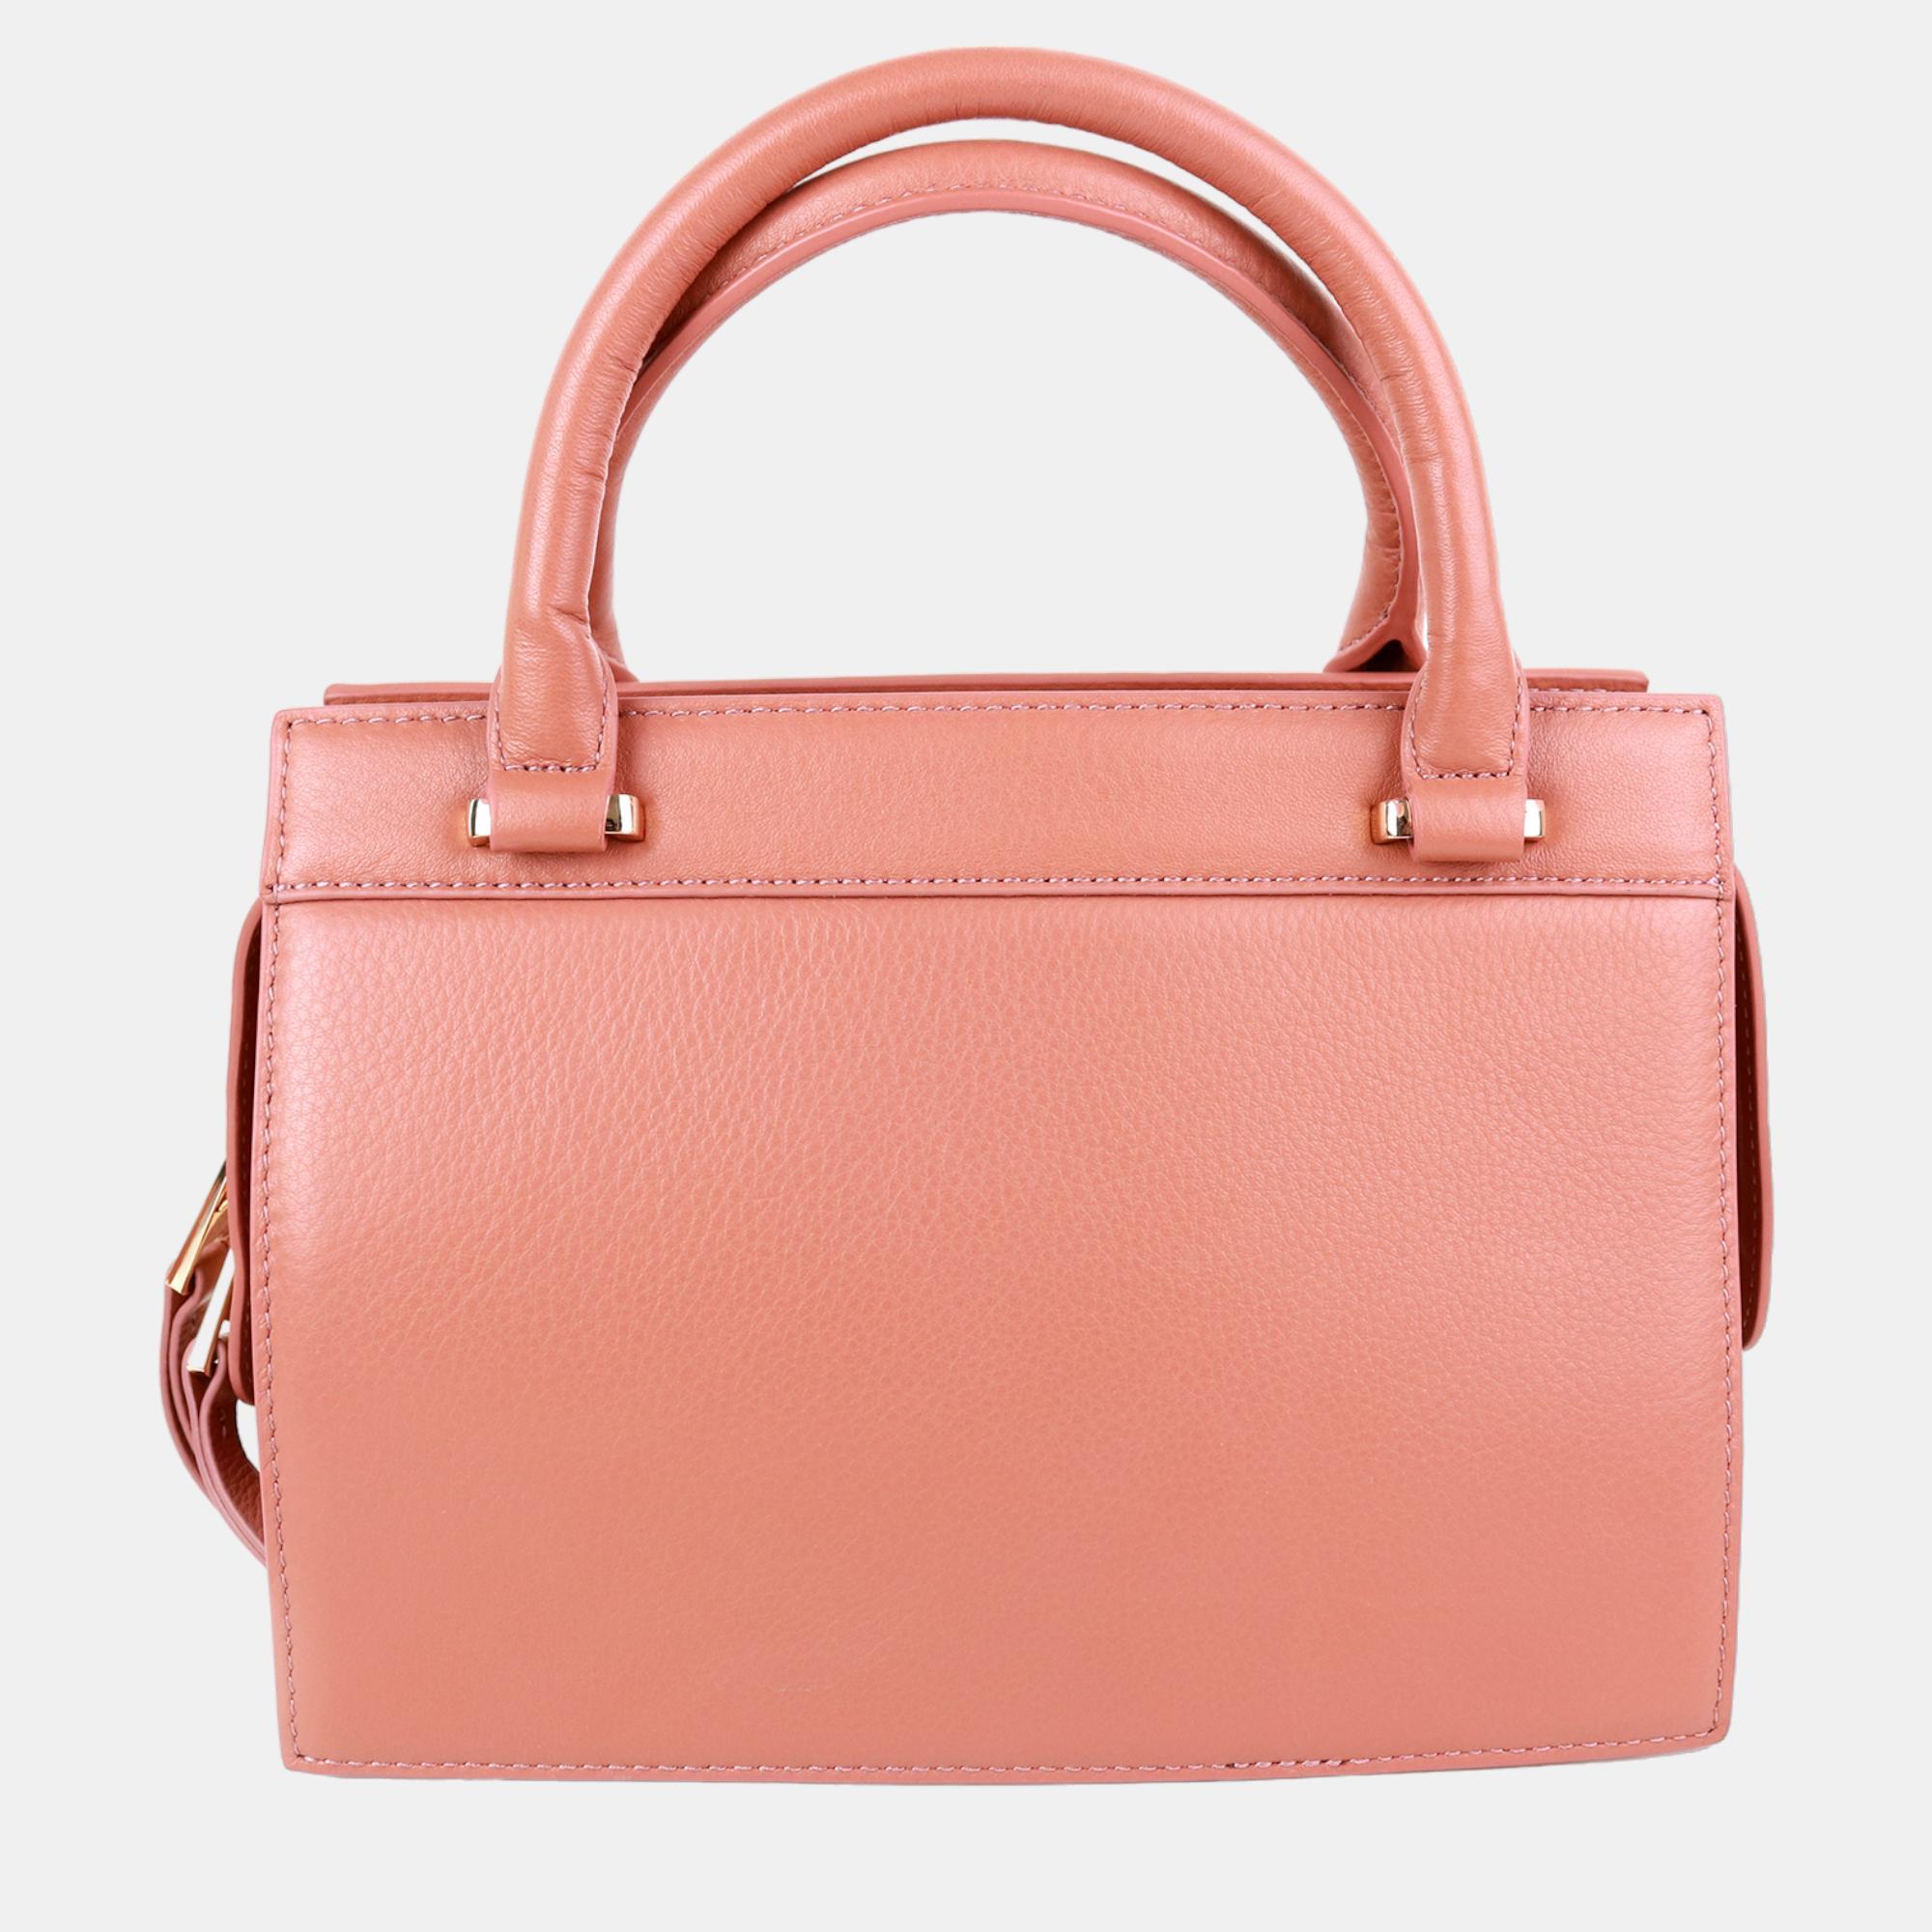 Charriol Light Brown Leather Forever Handbag